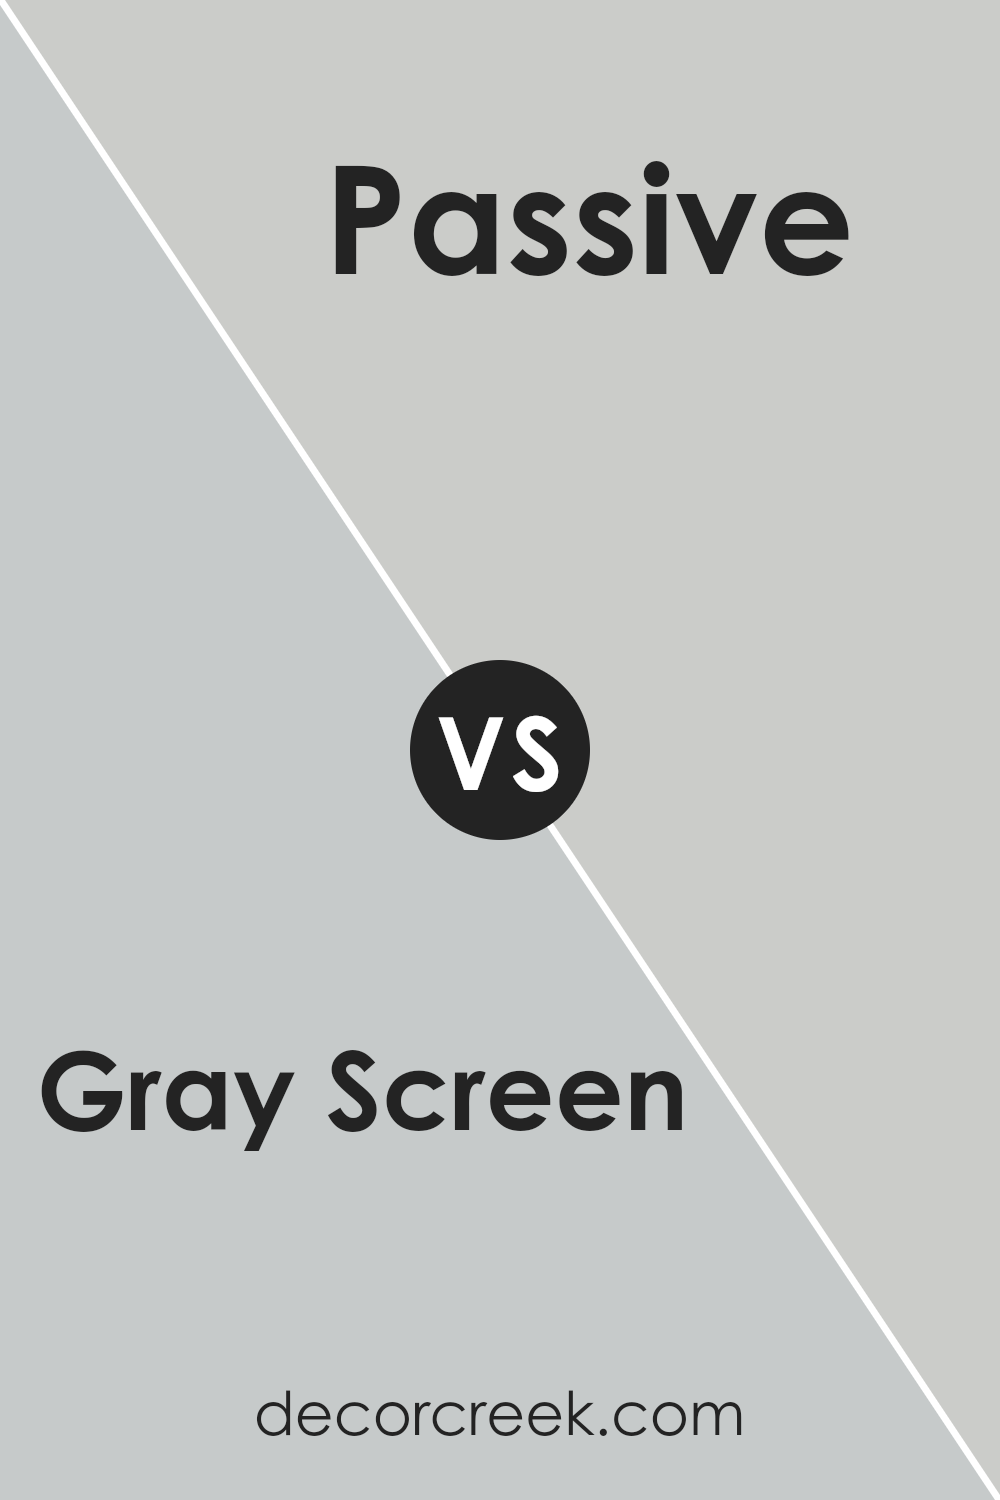 gray_screen_sw_7071_vs_passive_sw_7064